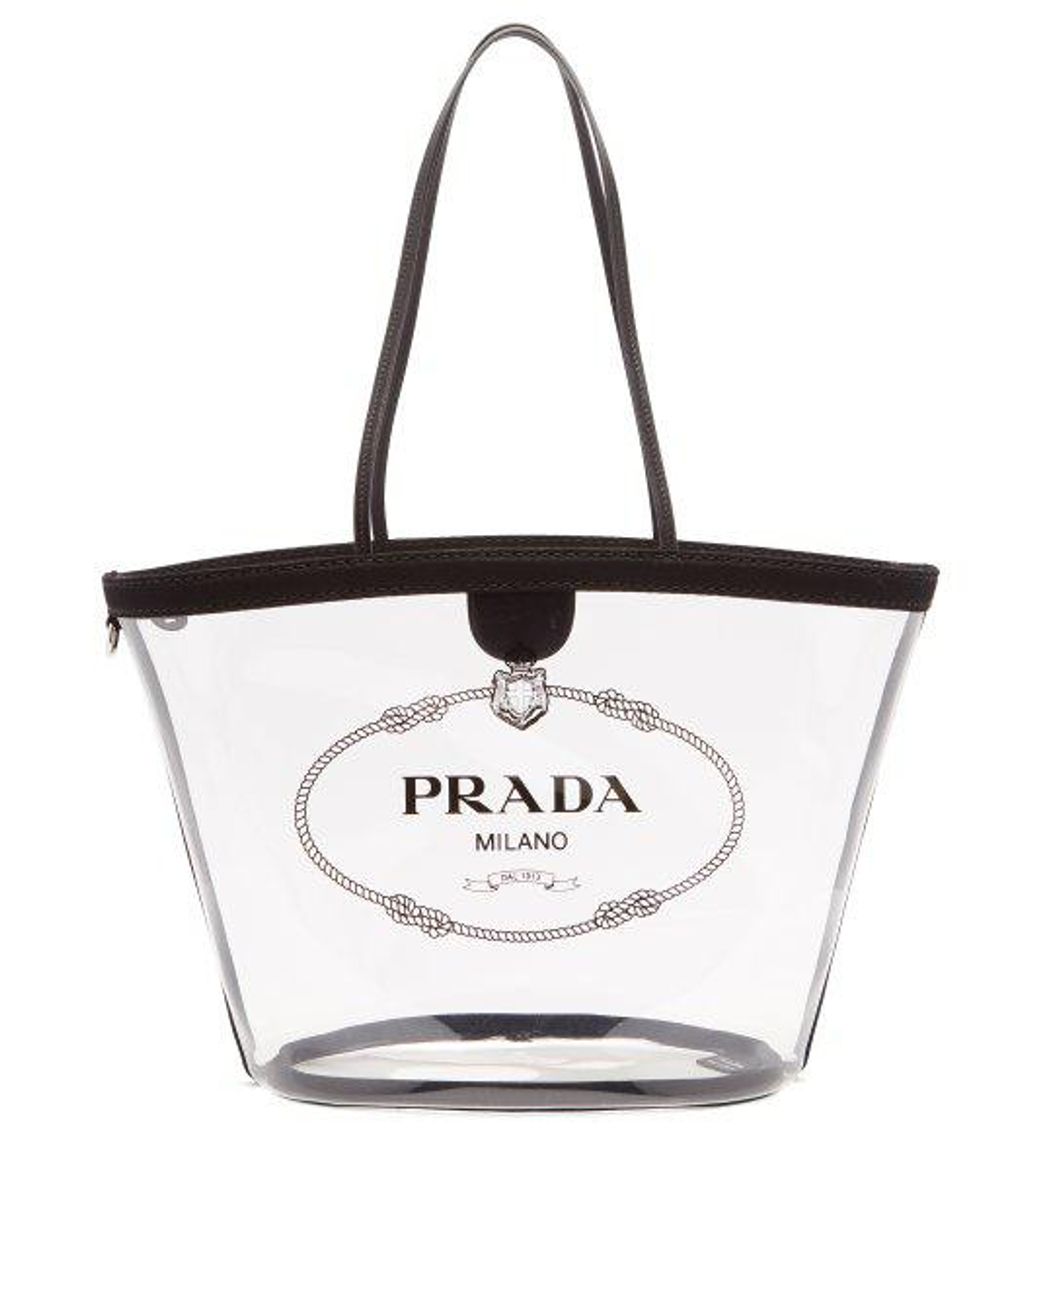 Prada Logo-print Clear Pvc Tote in Black